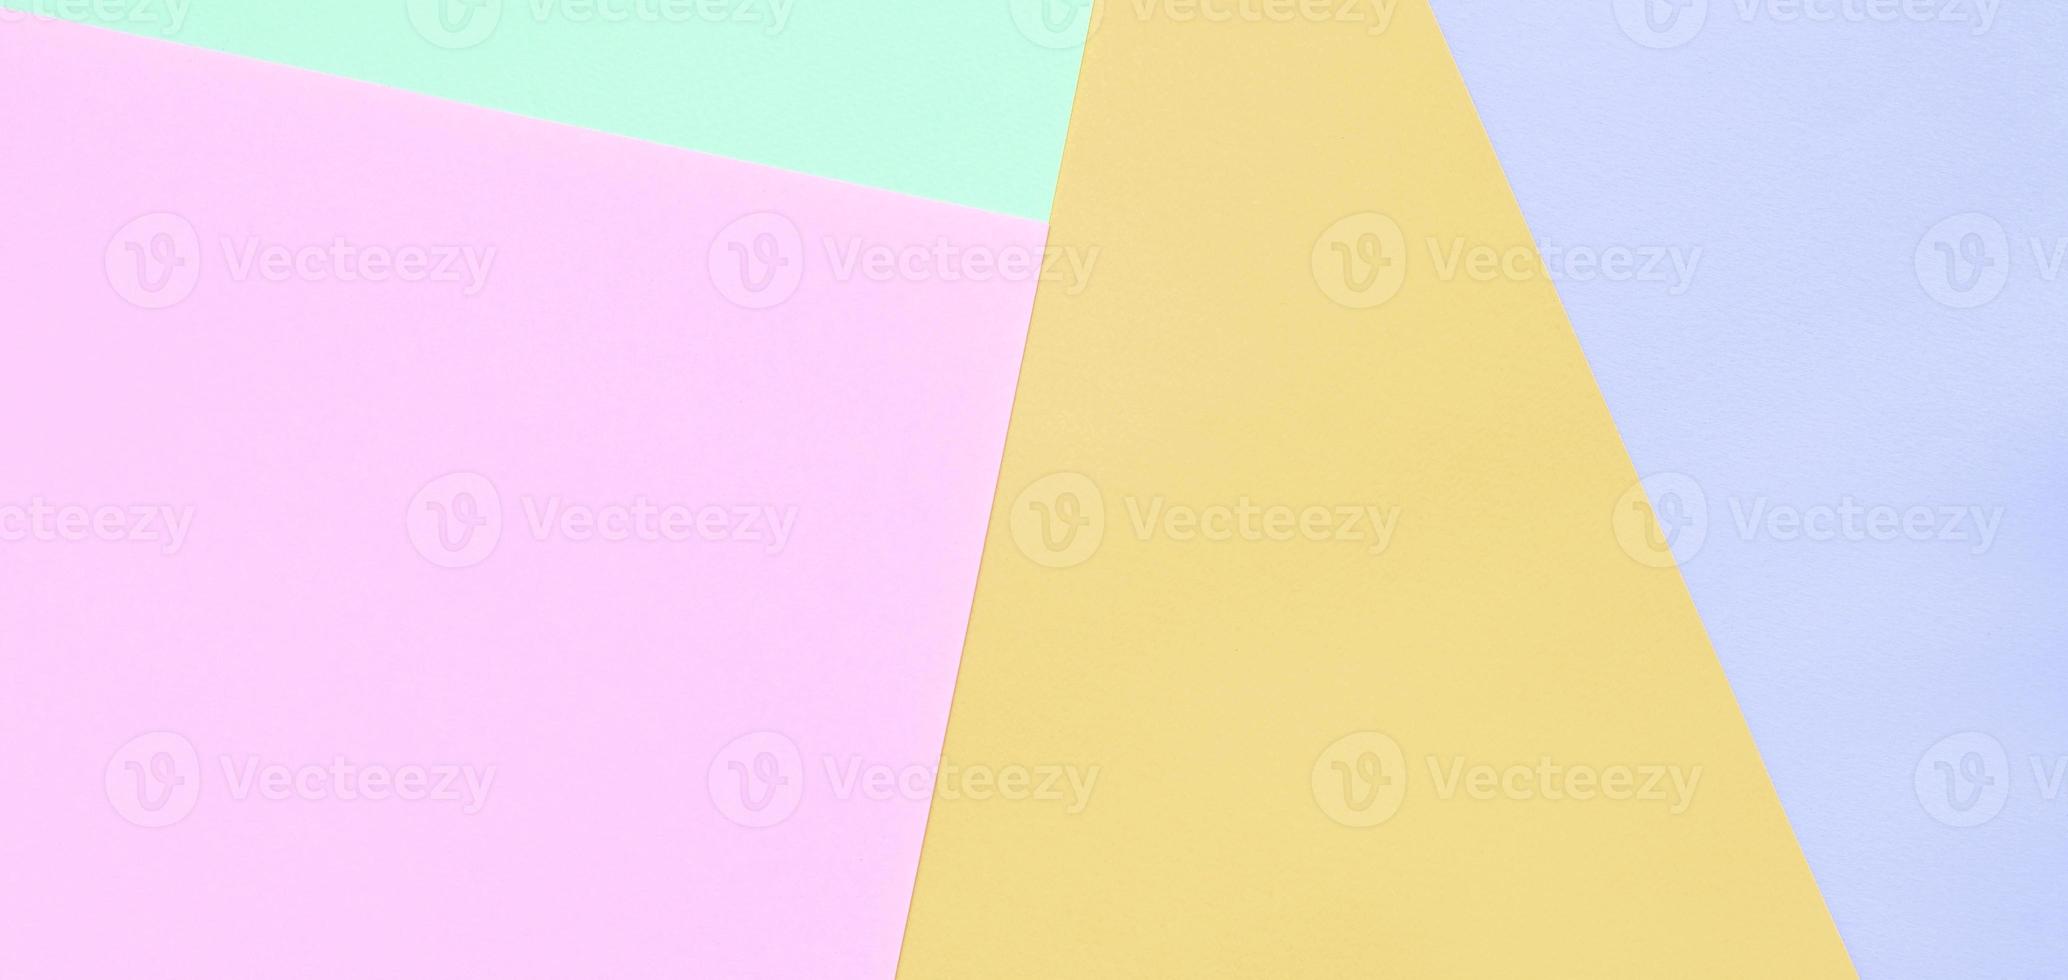 fondo de textura de colores pastel de moda. papeles con motivos geométricos rosas, violetas, naranjas y azules. foto